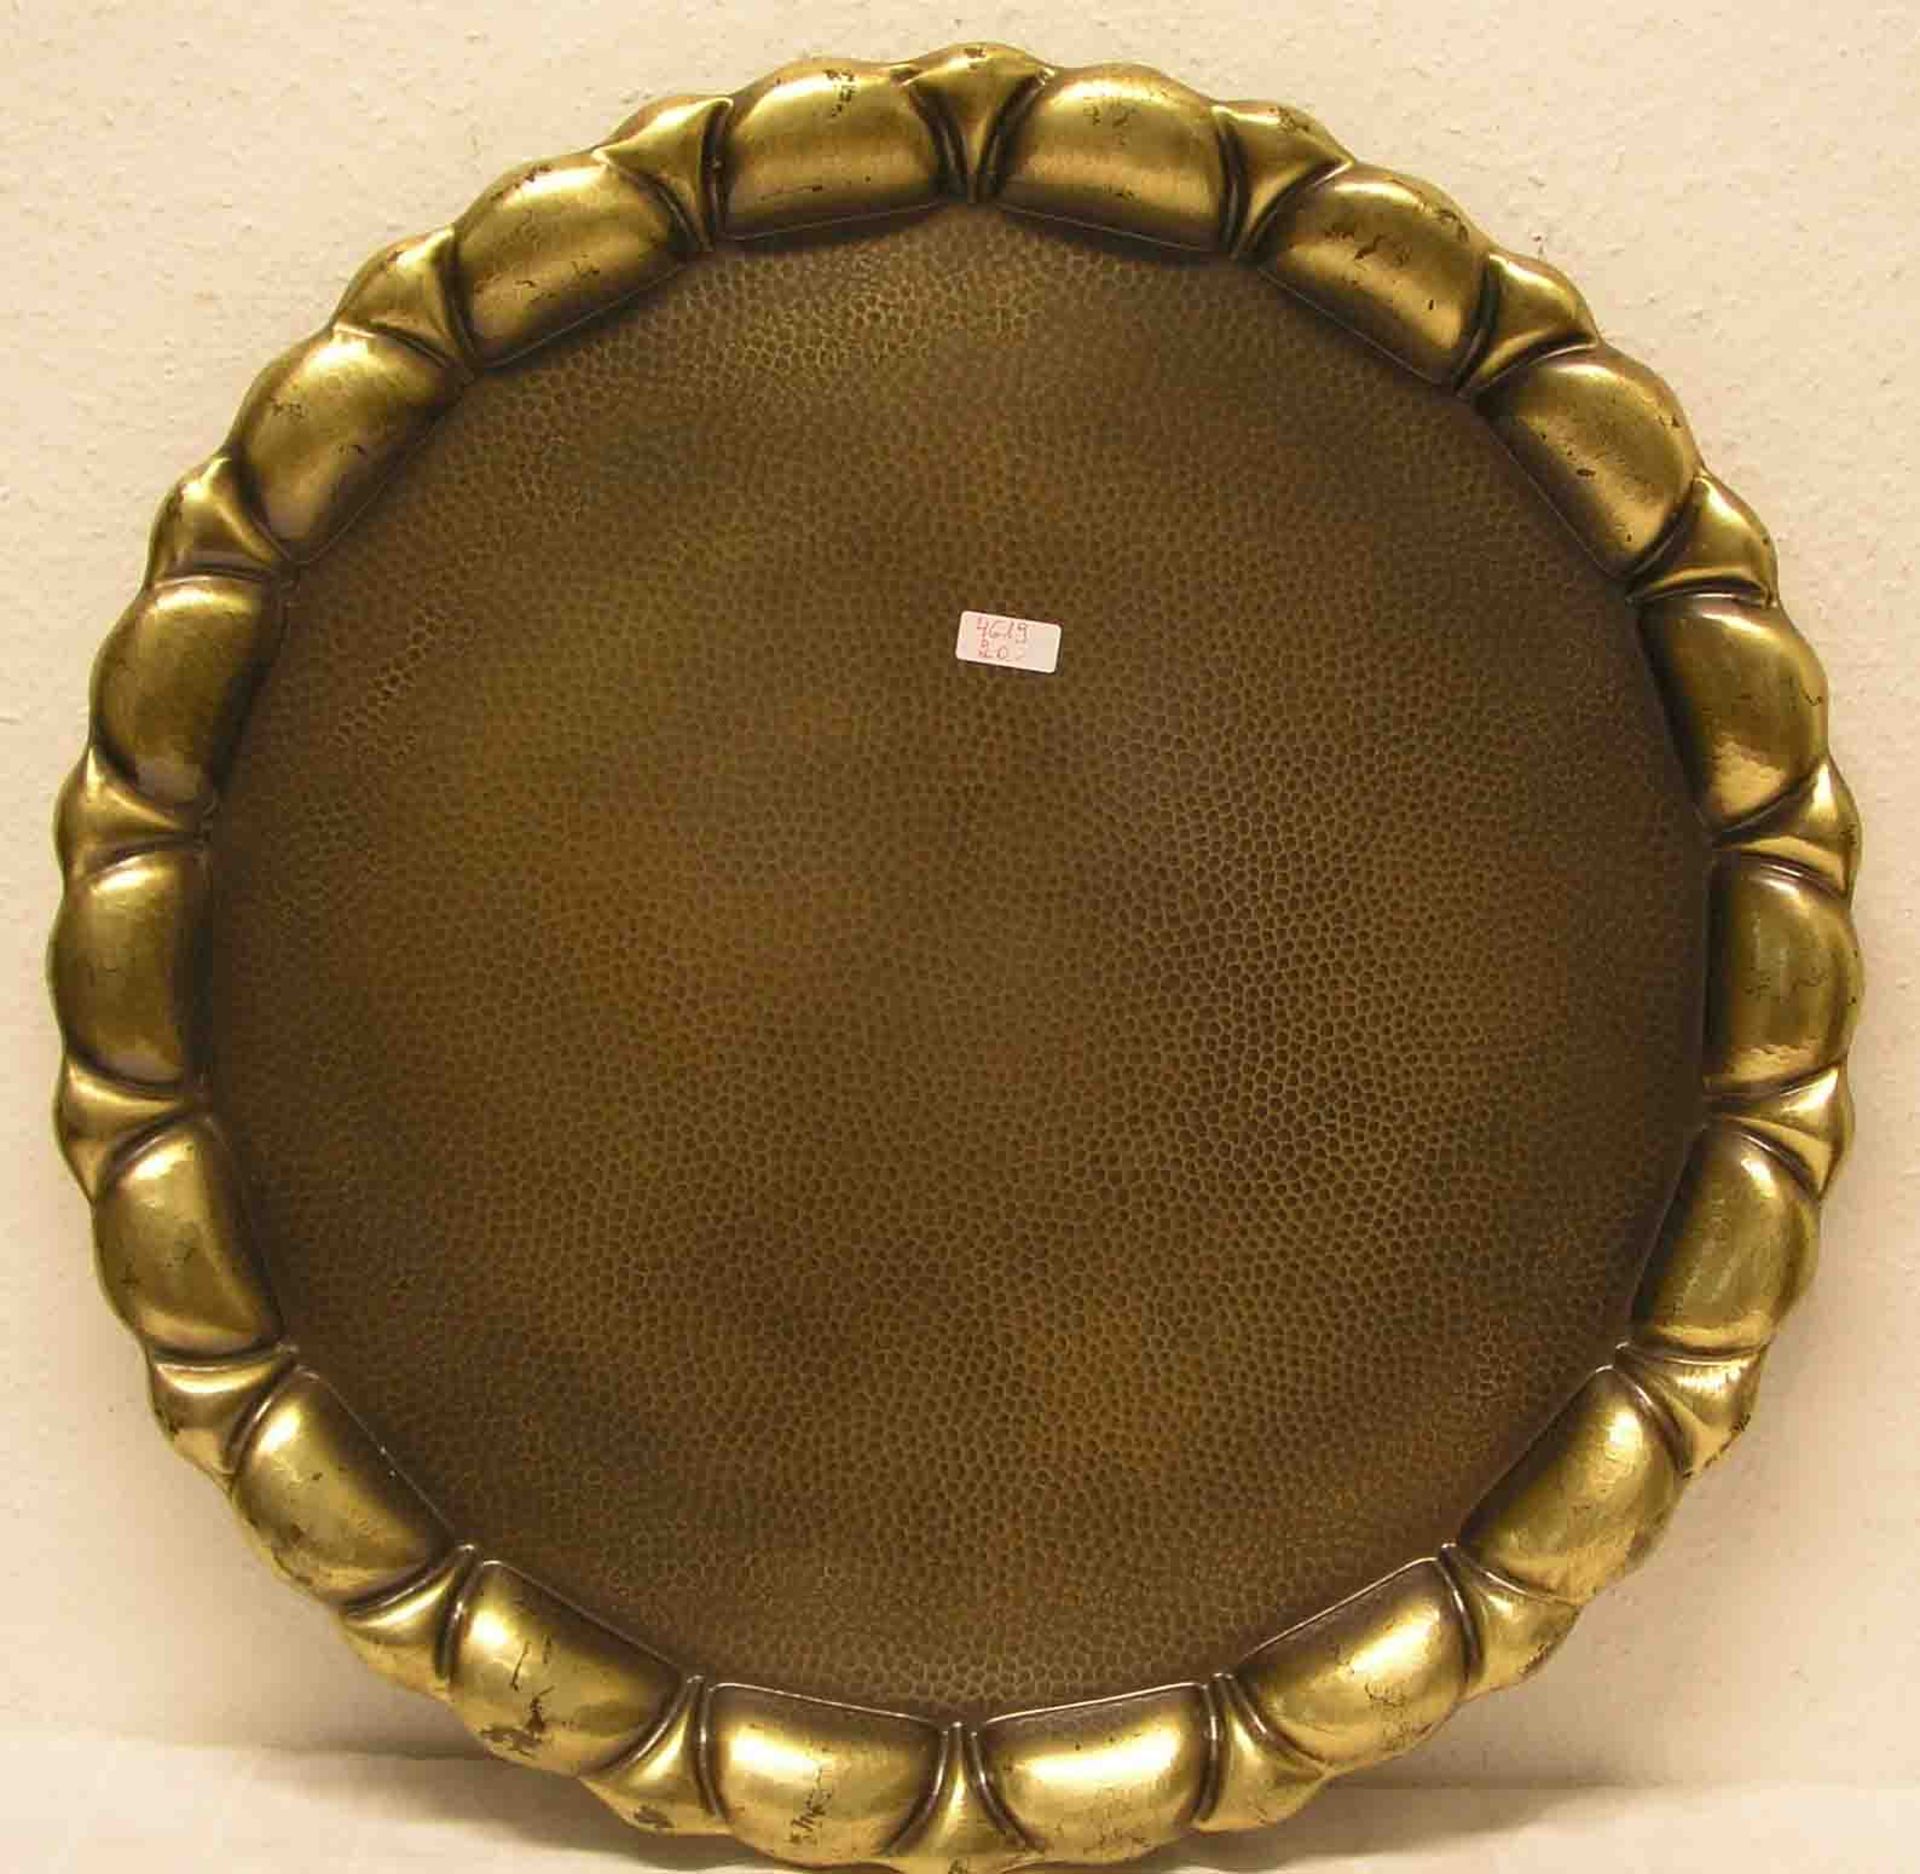 Tablett, um 1930. Runde Form, gewellter Rand, messingfarbig, Hammerschlag-Dekor.Durchmesser: 65cm.